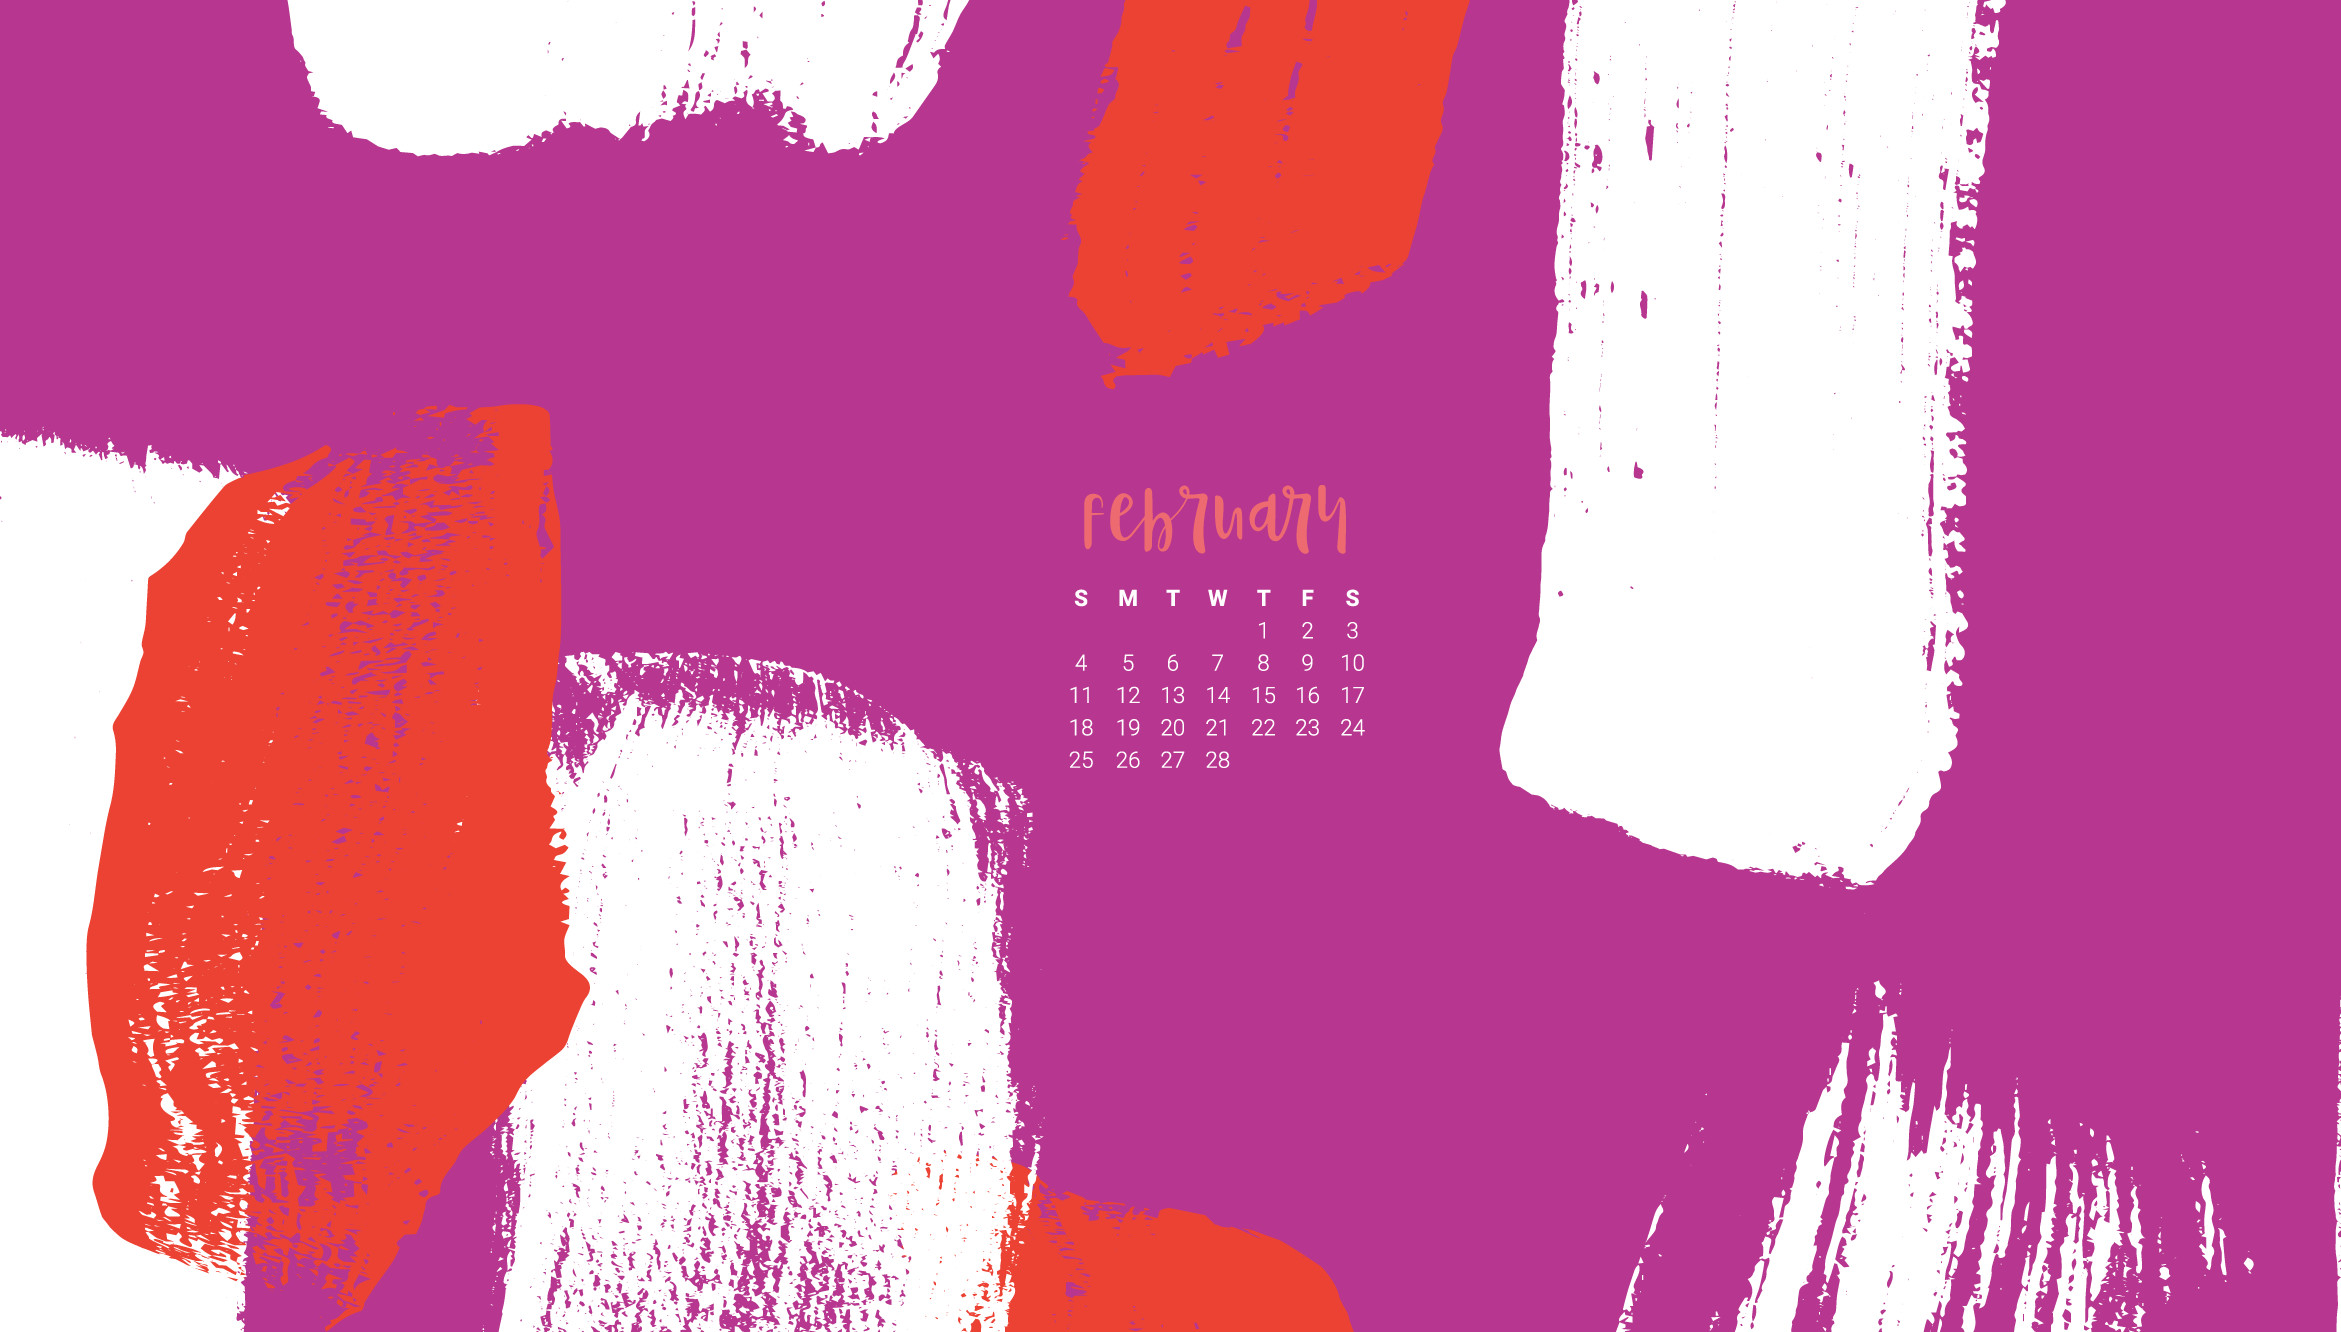 2341x1332 Desktop Wallpaper February 2018 Calendar Consignment